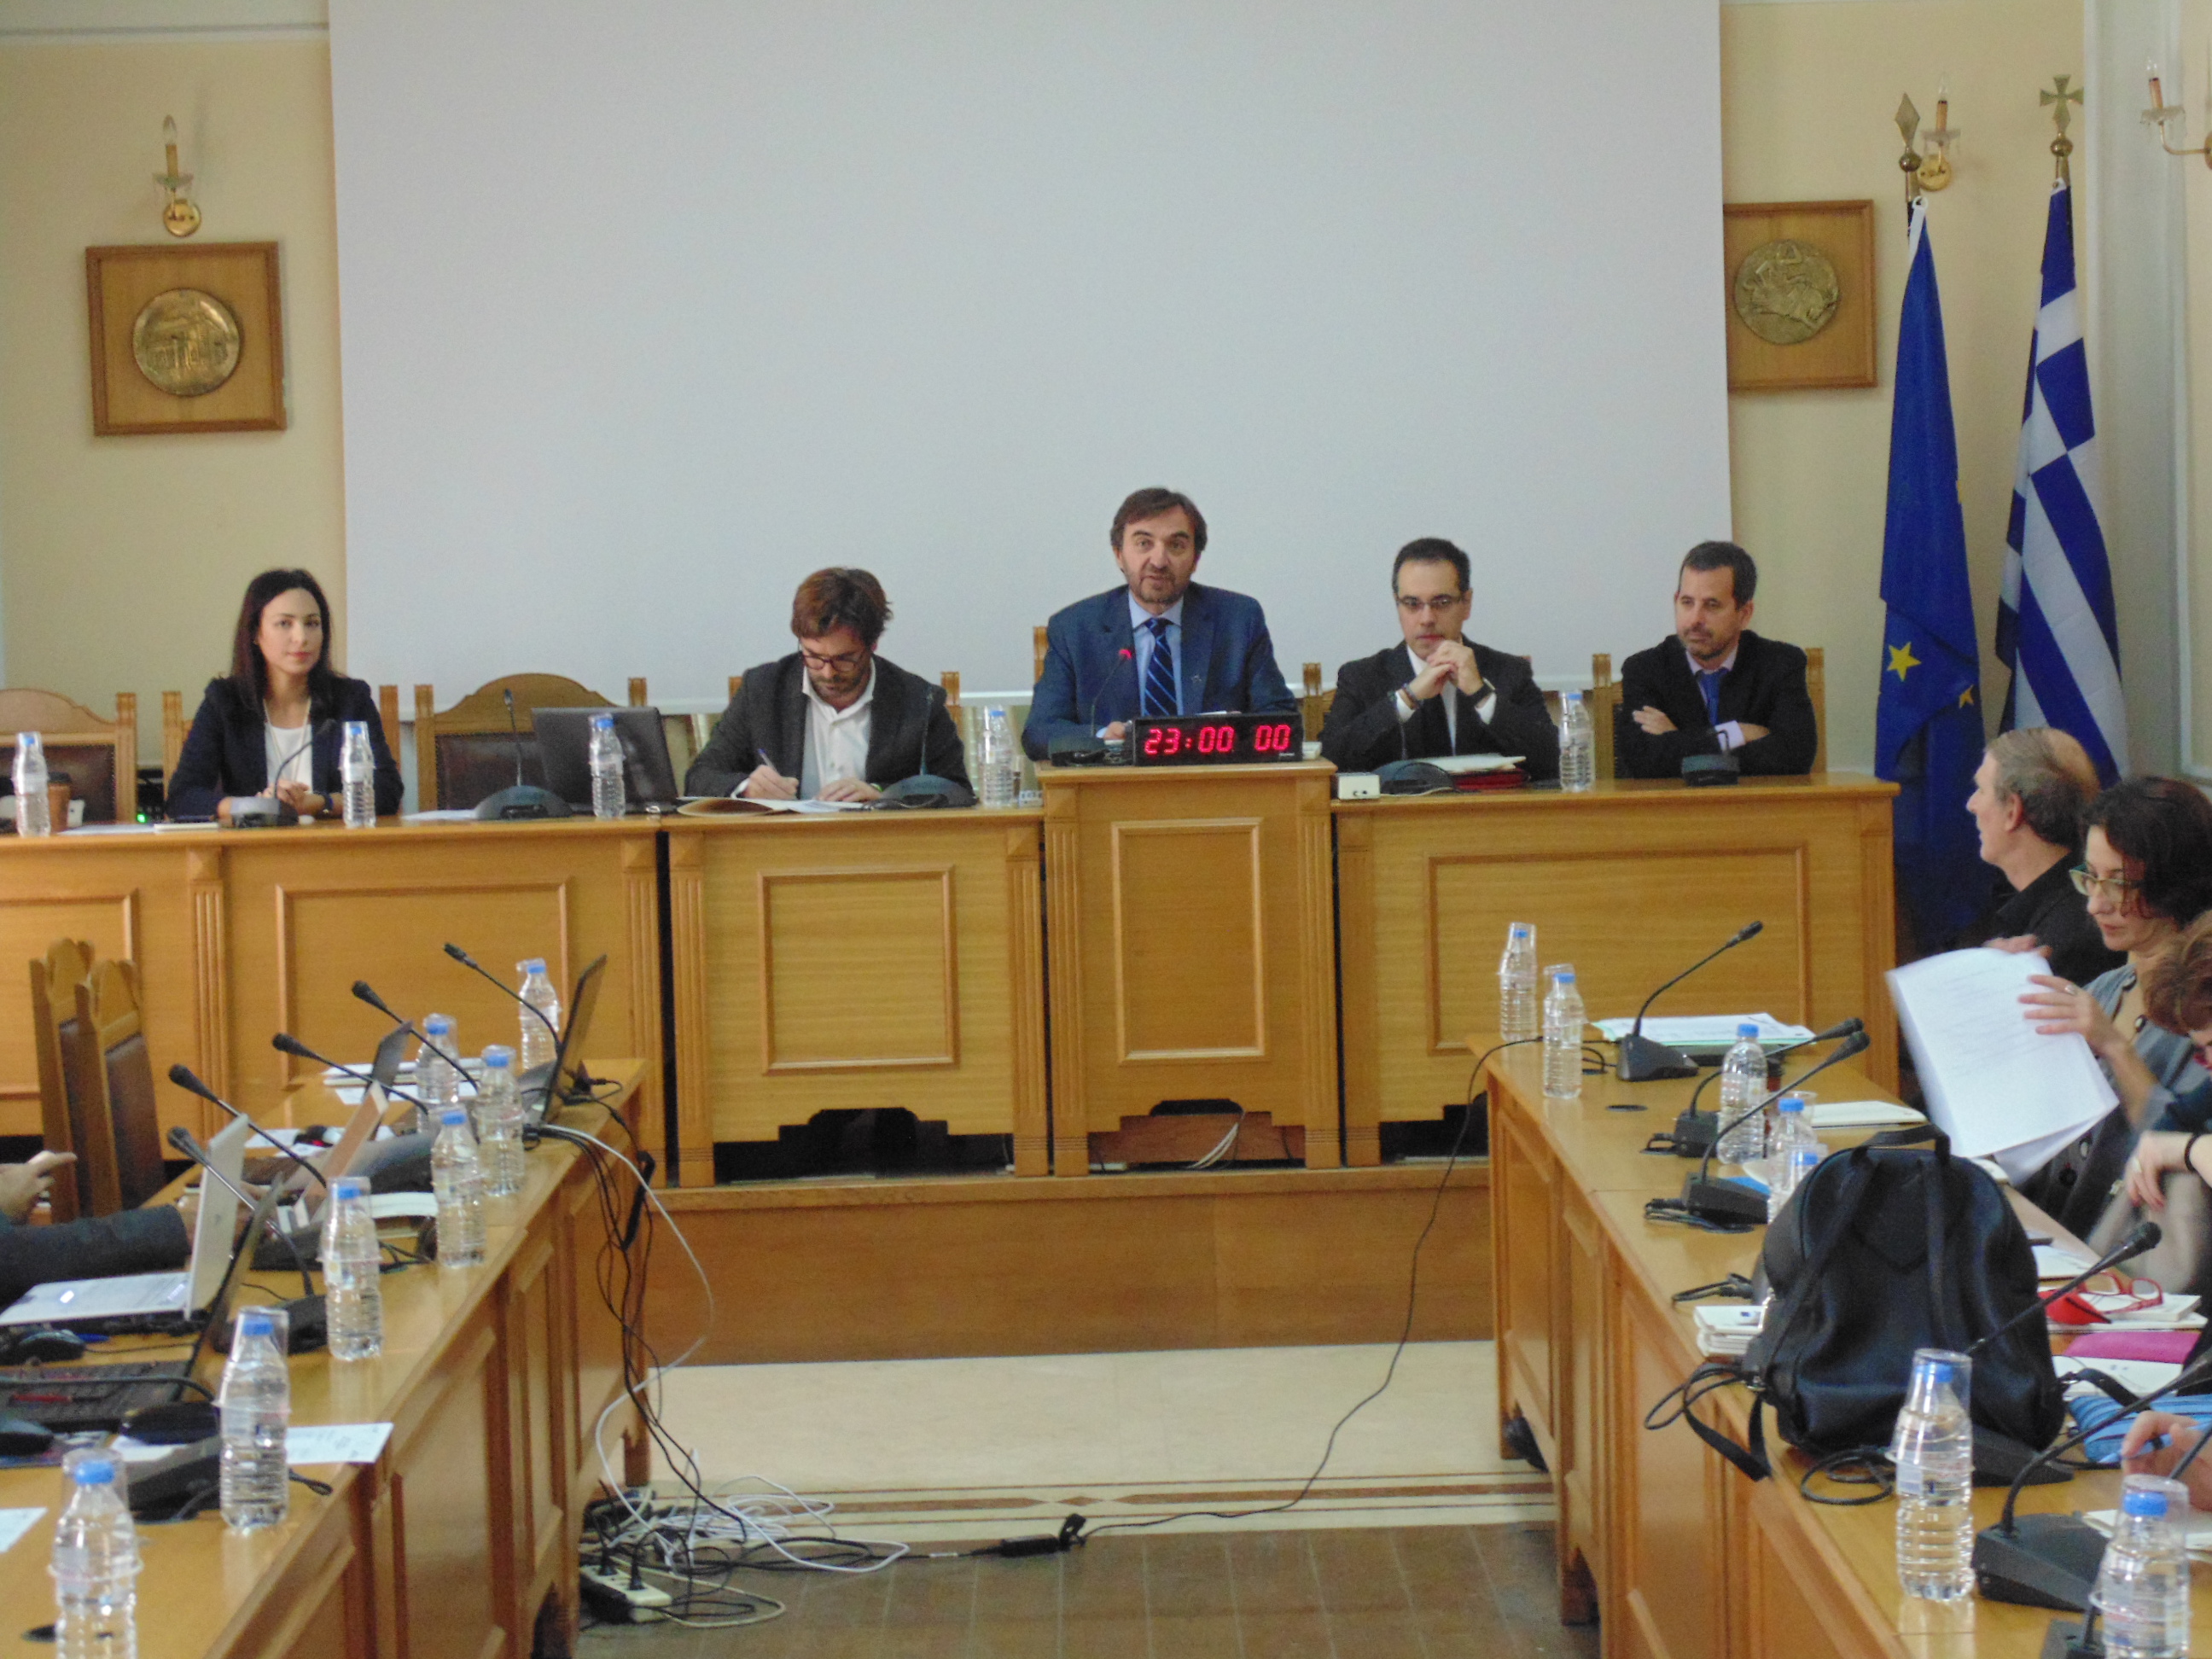 Συνάντηση εργασίας των εταίρων του Ευρωπαϊκού έργου “SHERPA” πραγματοποιήθηκε στη Περιφέρεια Κρήτης 